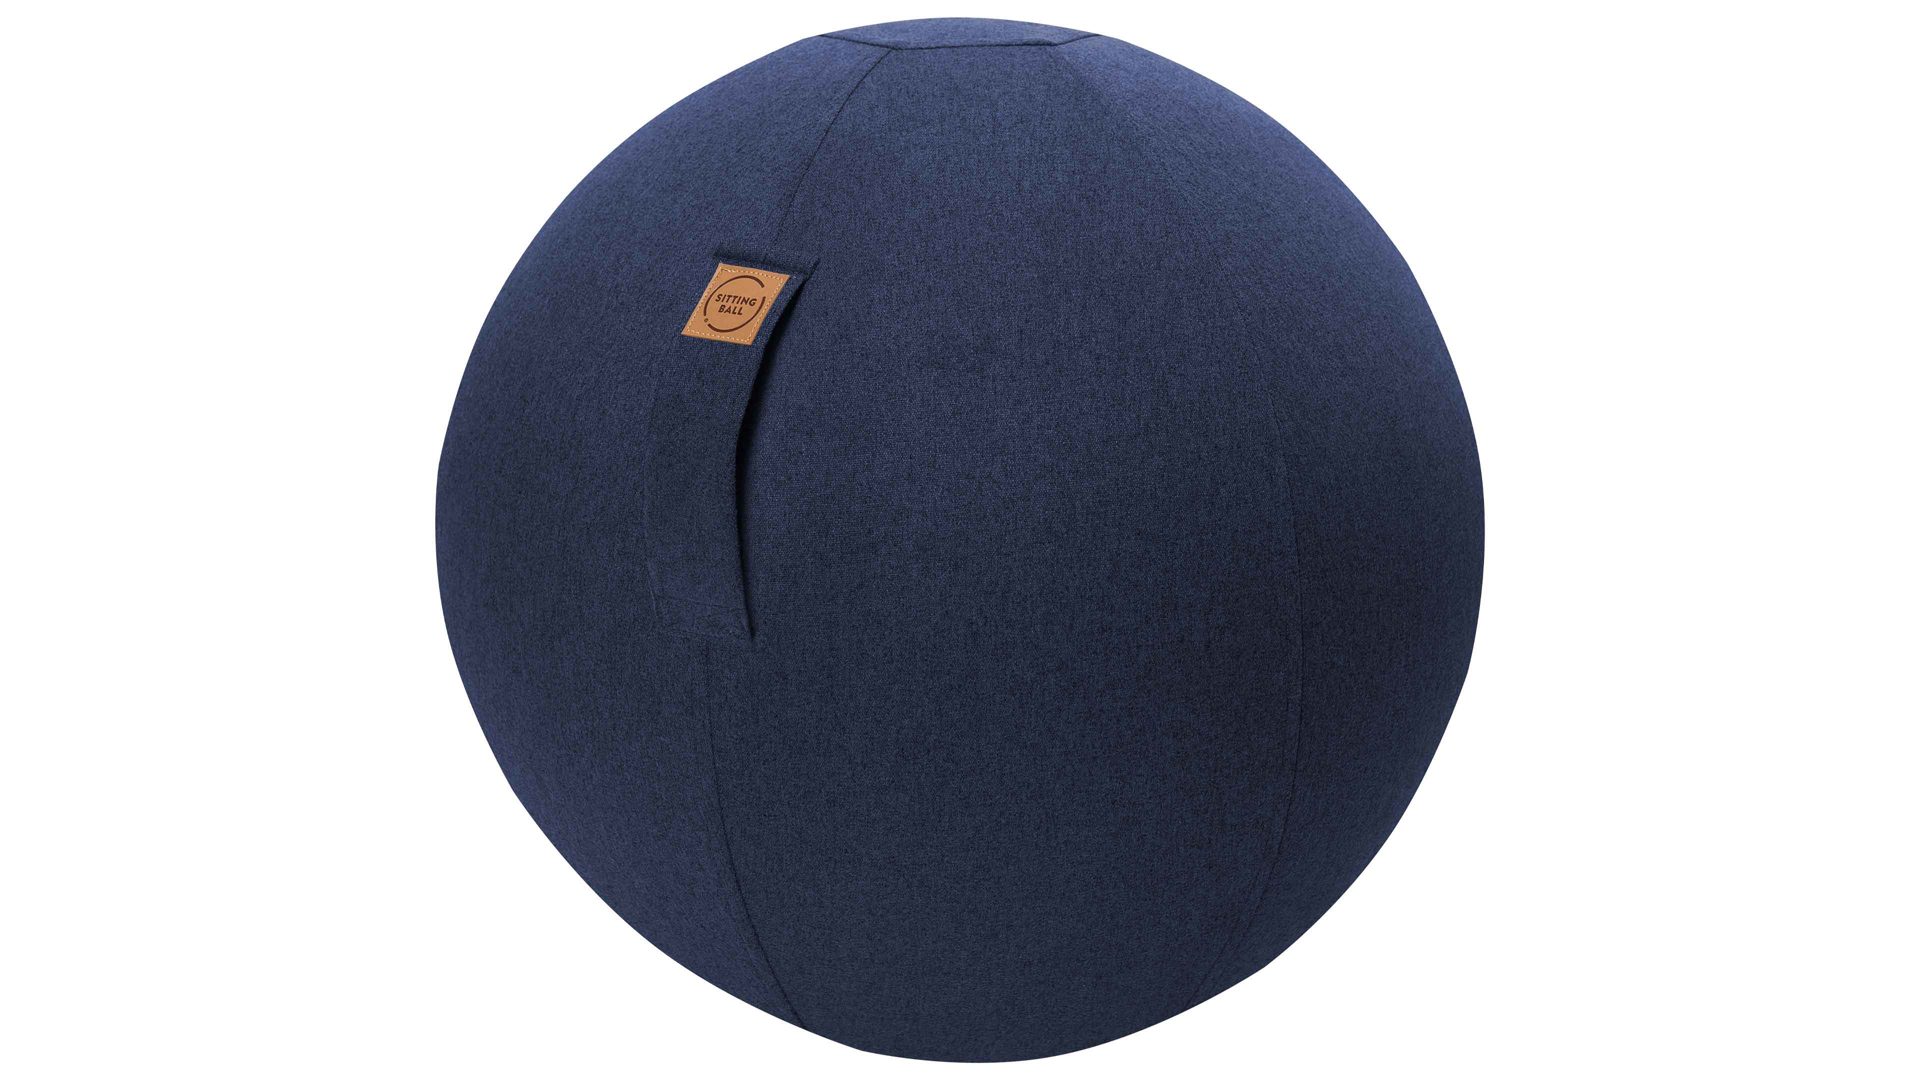 Sitzball Magma sitting point aus Kunstfaser in Dunkelblau SITTING BALL® Felt dunkelblauer Bezug – Durchmesser ca. 65 cm